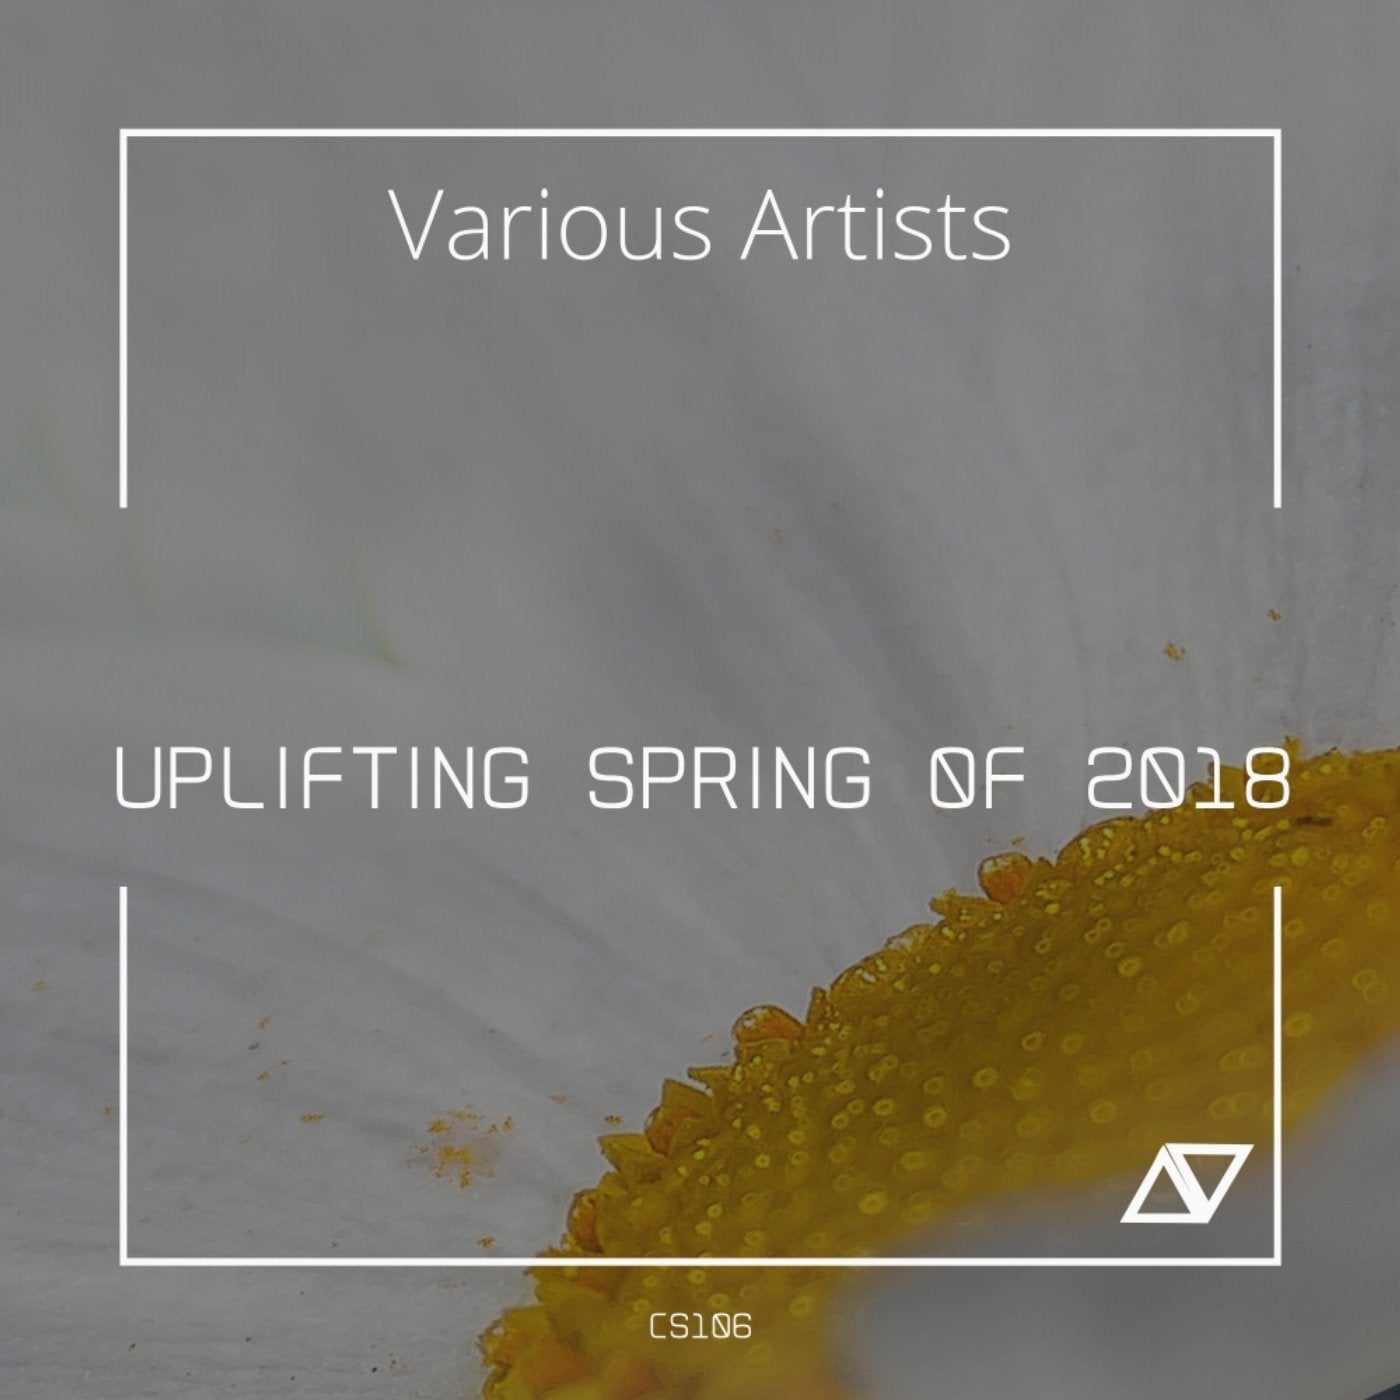 Uplifting Spring of 2018